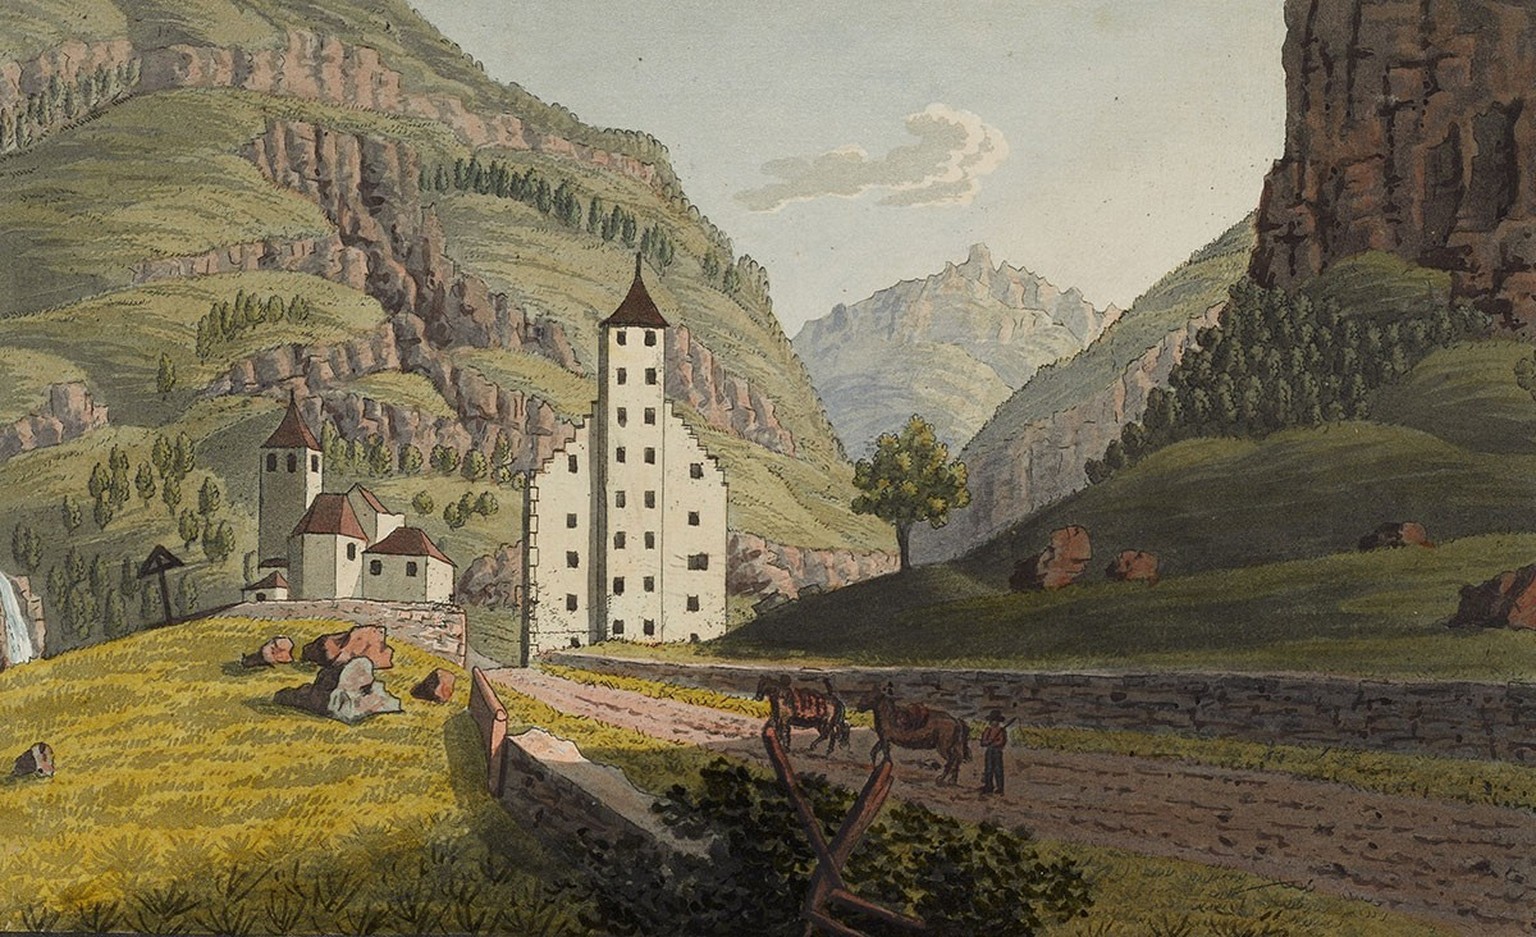 Zeichen der Macht: Der Stockalper-Turm in Gondo auf einer Druckgrafik von 1821.
https://www.helveticarchives.ch/detail.aspx?ID=928822